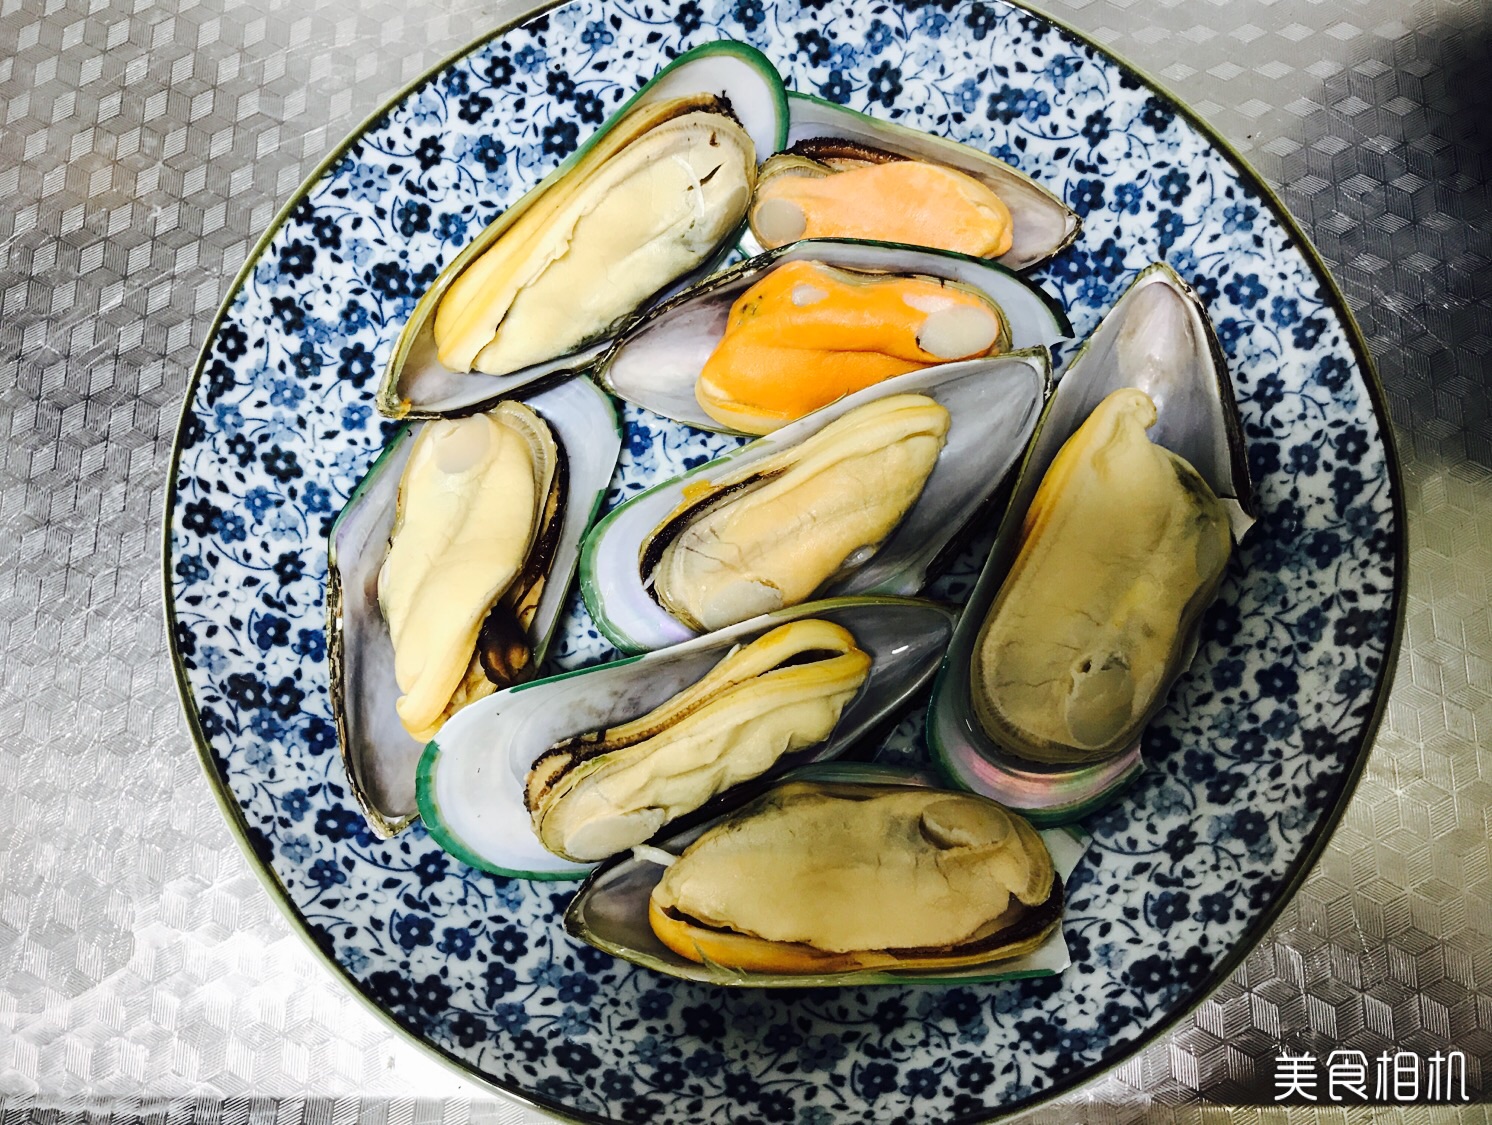 天鹅蛋 紫石房蛤 油贝‘贝类厂家直销 海鲜批发 鲜活海鲜-阿里巴巴